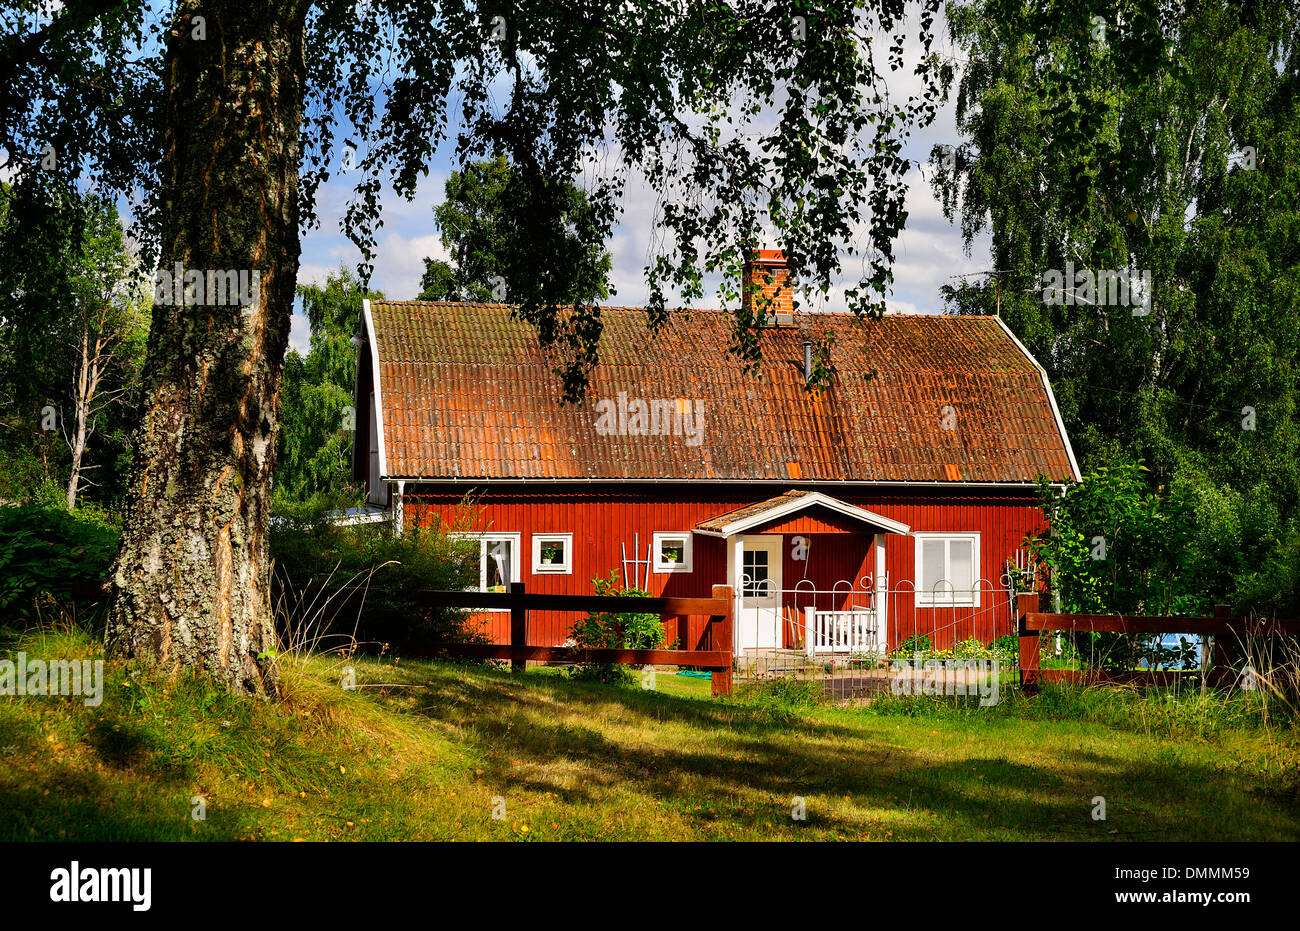 Sweden, Smaland, Kalmar laen, Vimmerby, Mjoeshult, residential house Stock Photo